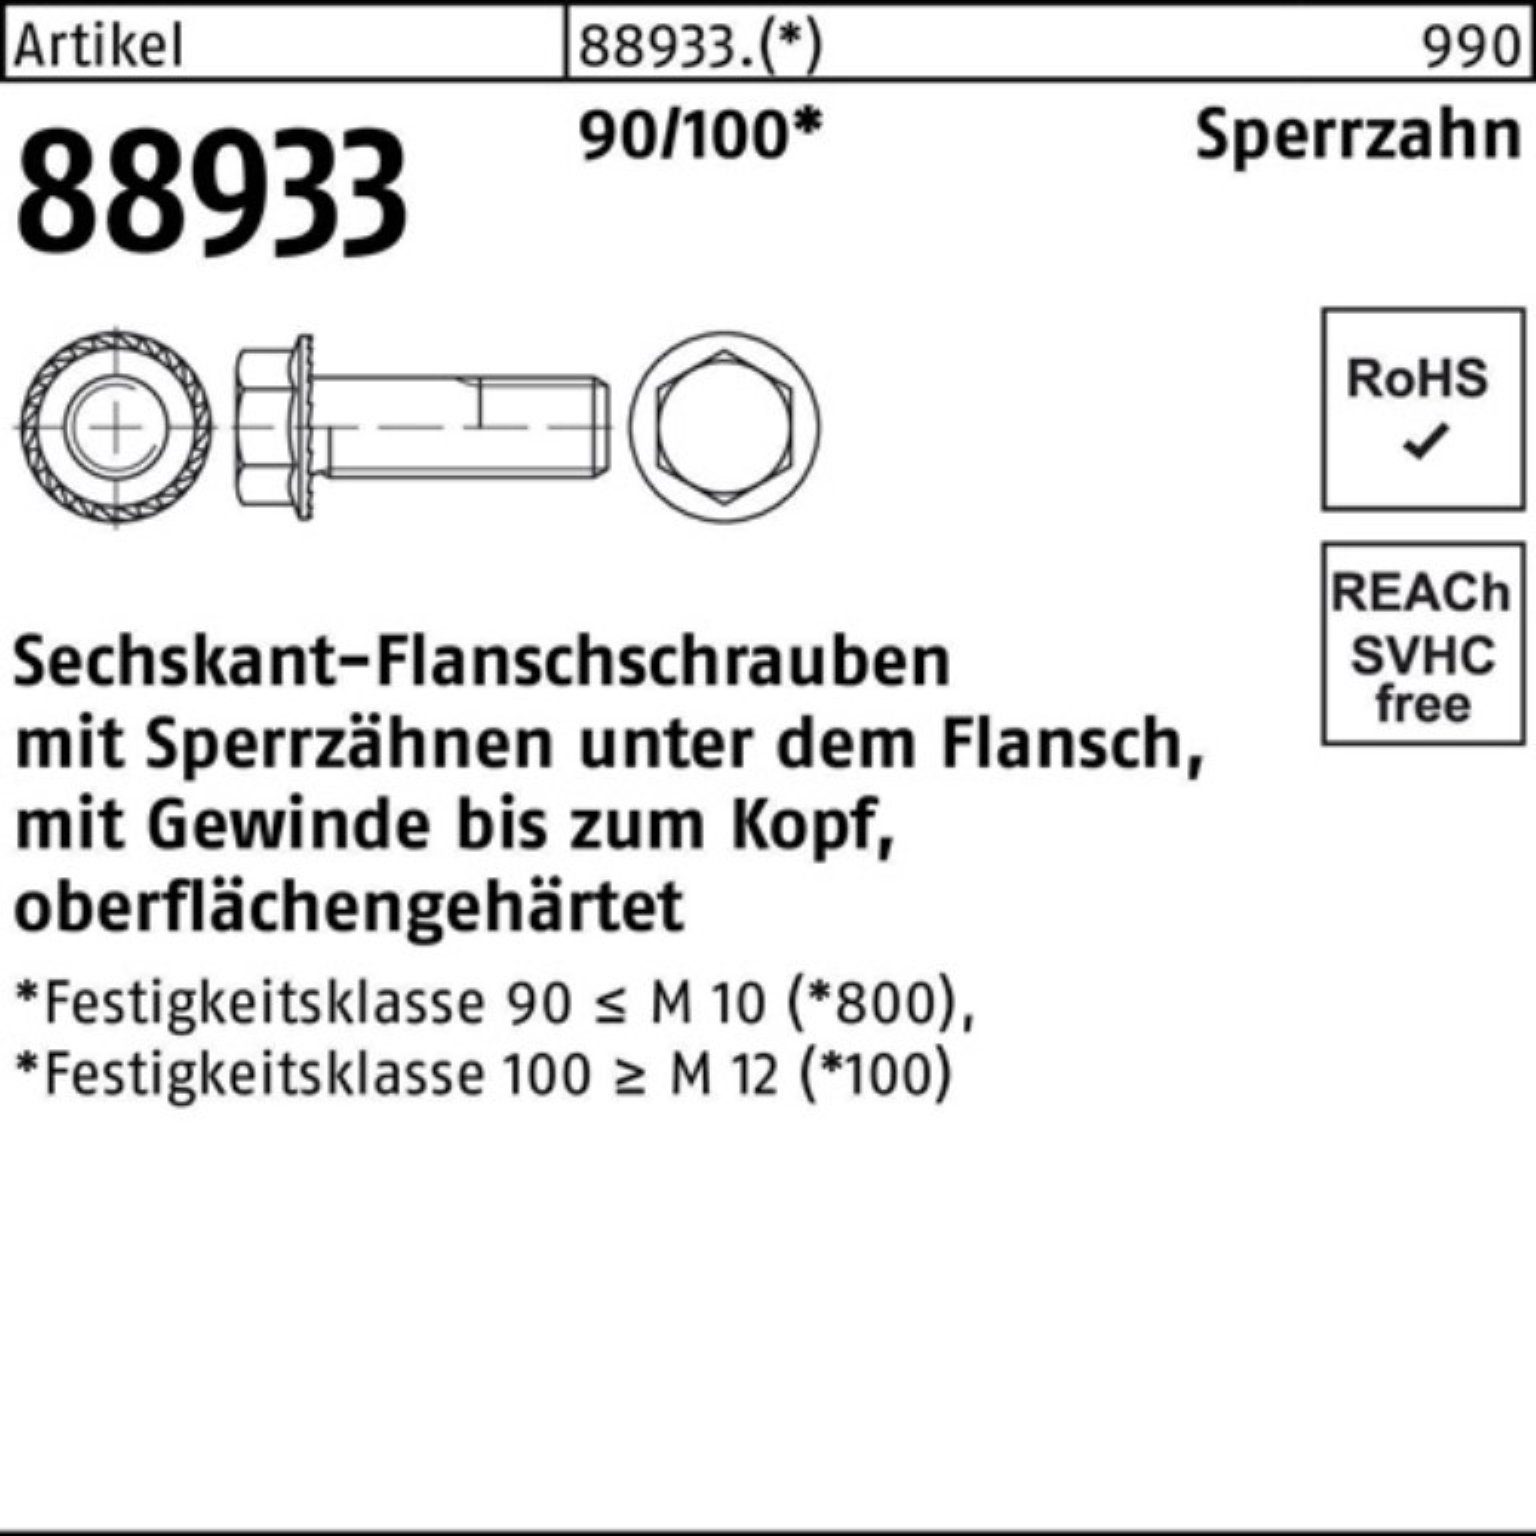 Sechskantflanschschraube 88933 Pack 90/100 R Schraube Reyher M12x 35 VG Sperrz. 100er